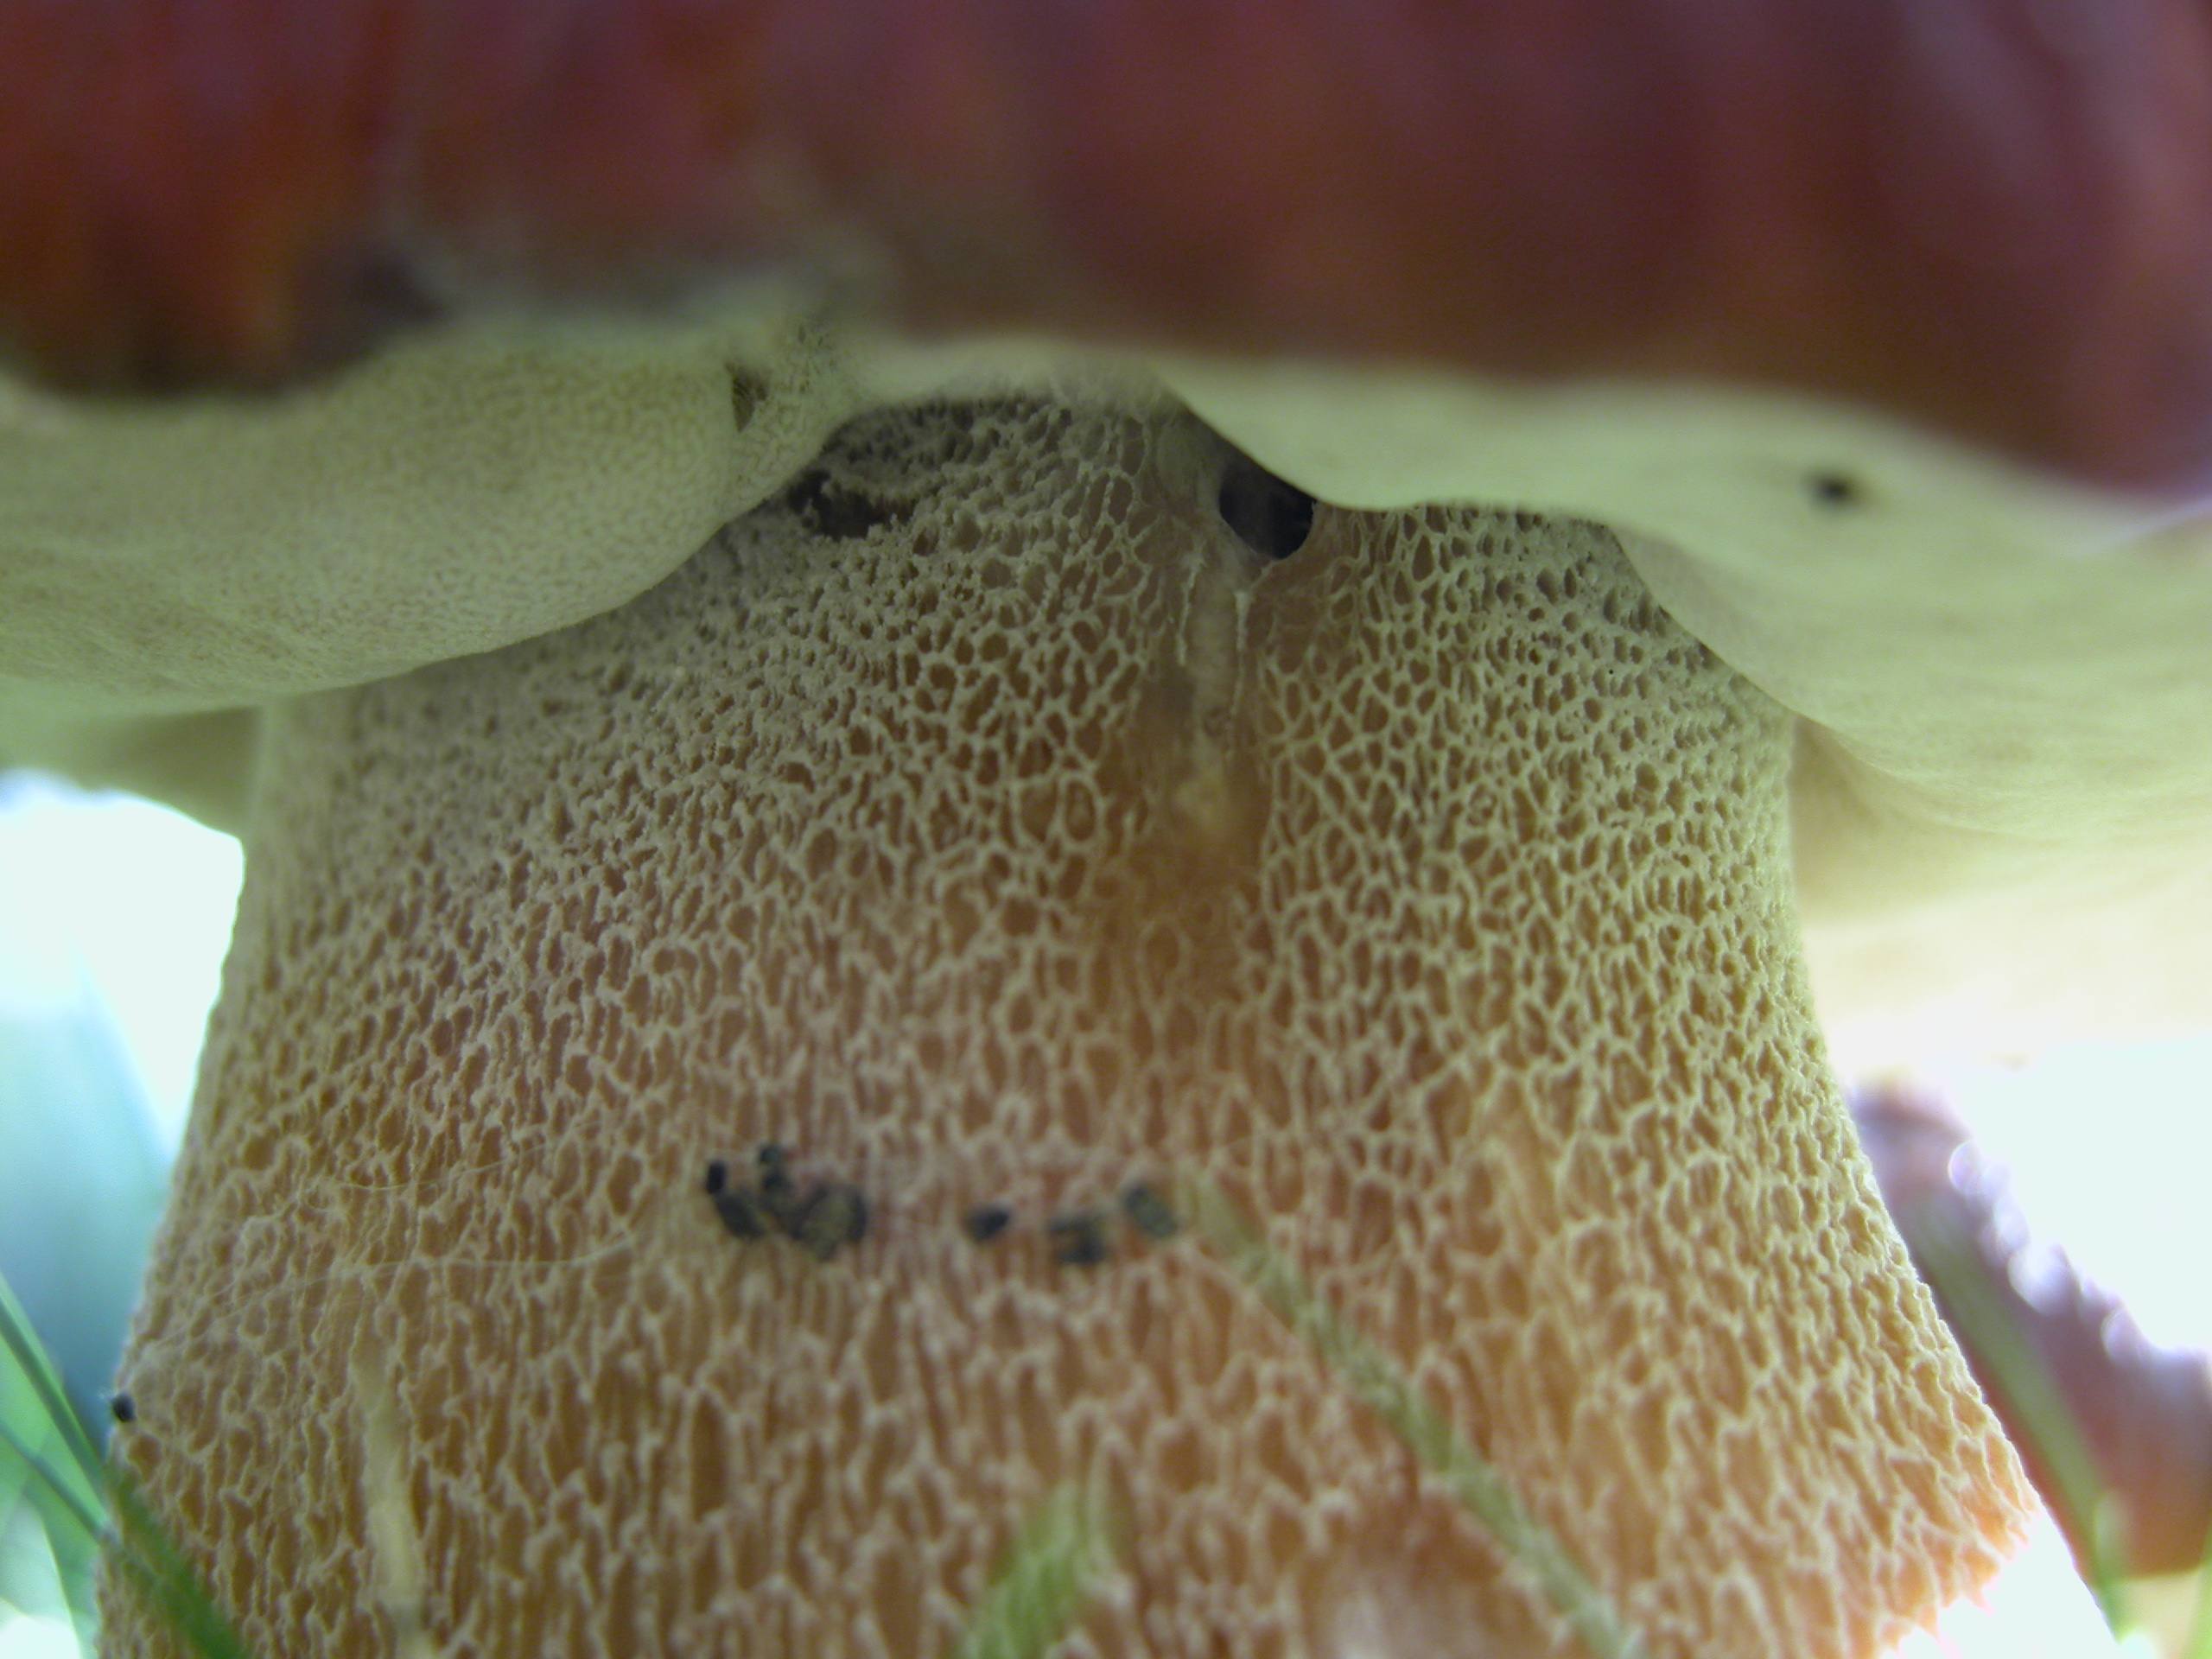 fungus mushroom toadstool